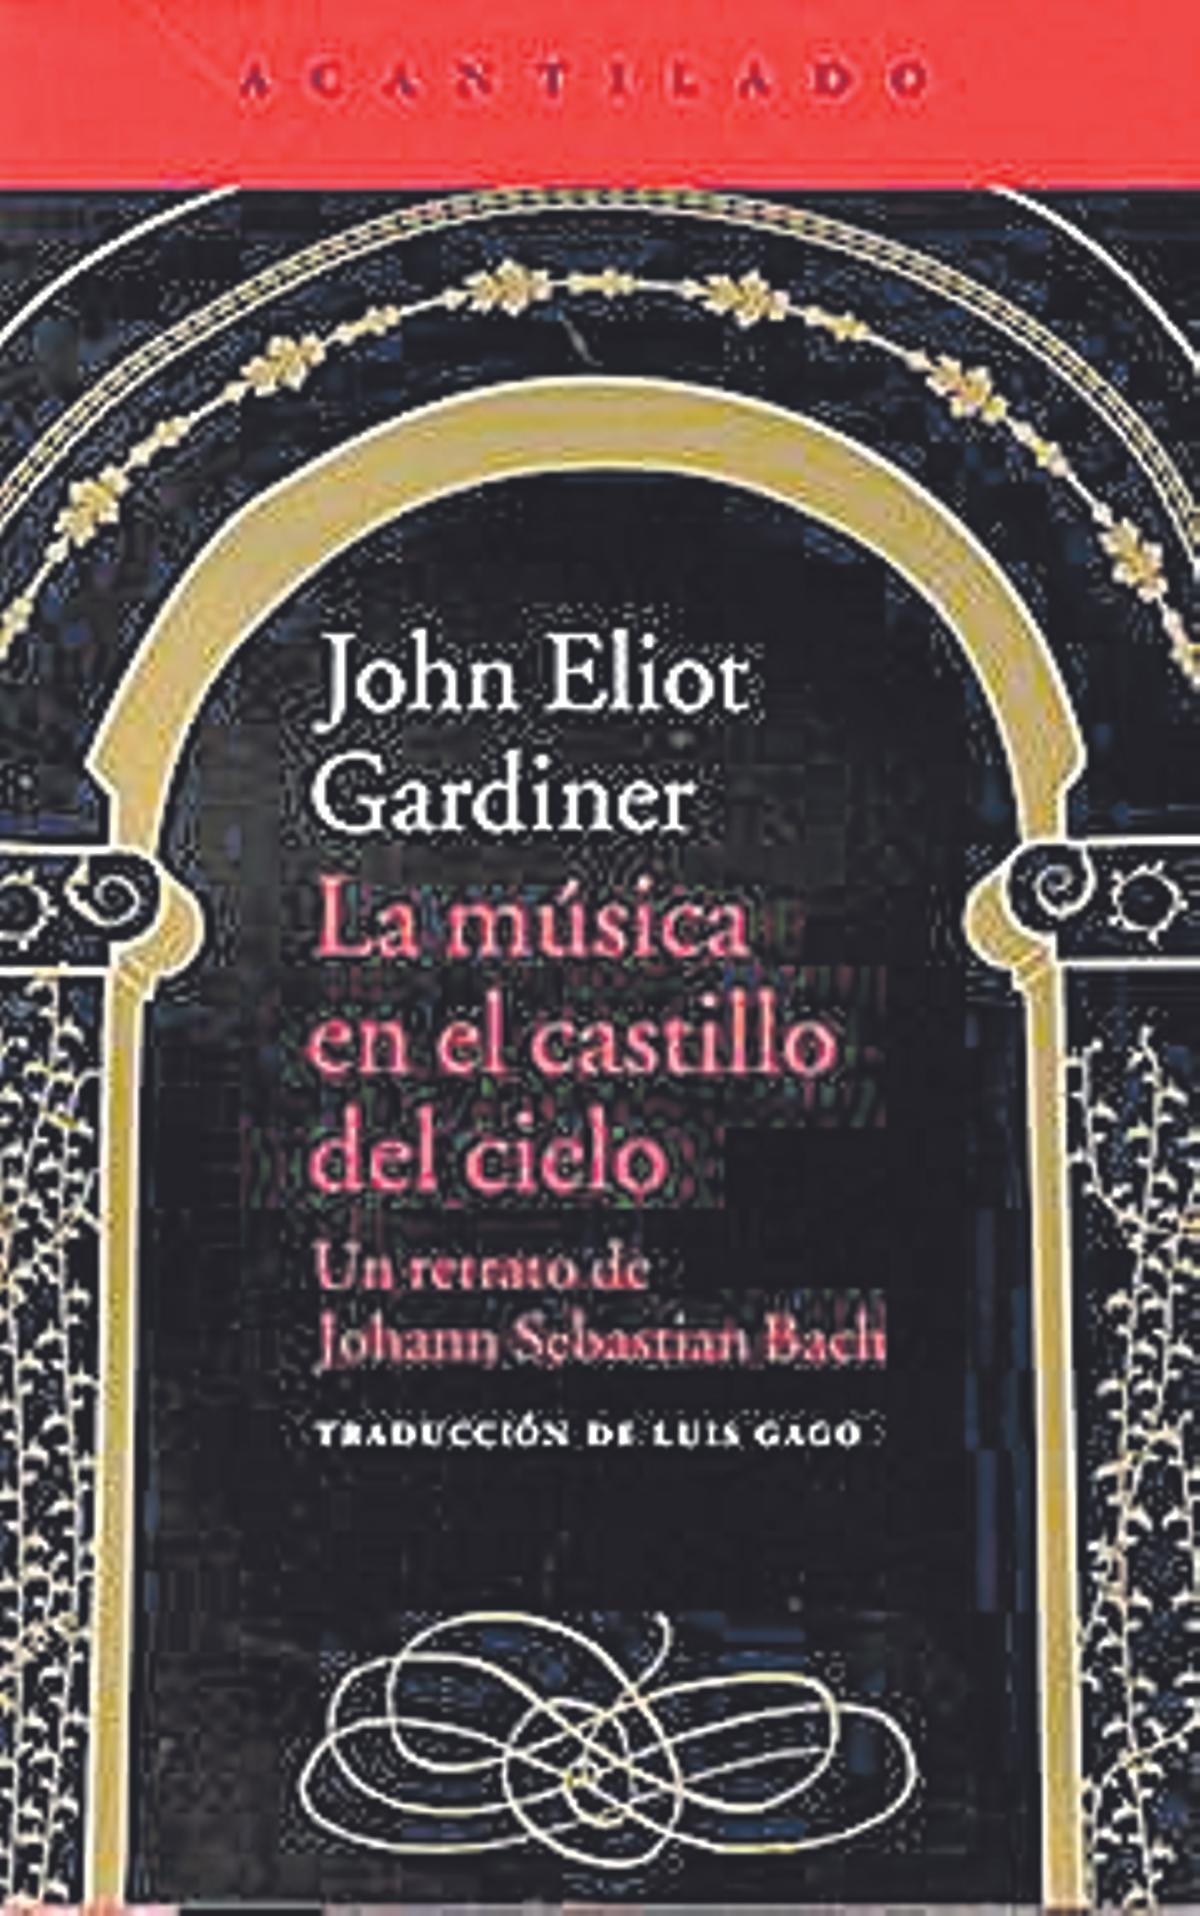 La música en el Castillo del cielo, John Eliot Gardiner. Acantilado 928 páginas. 44 euros